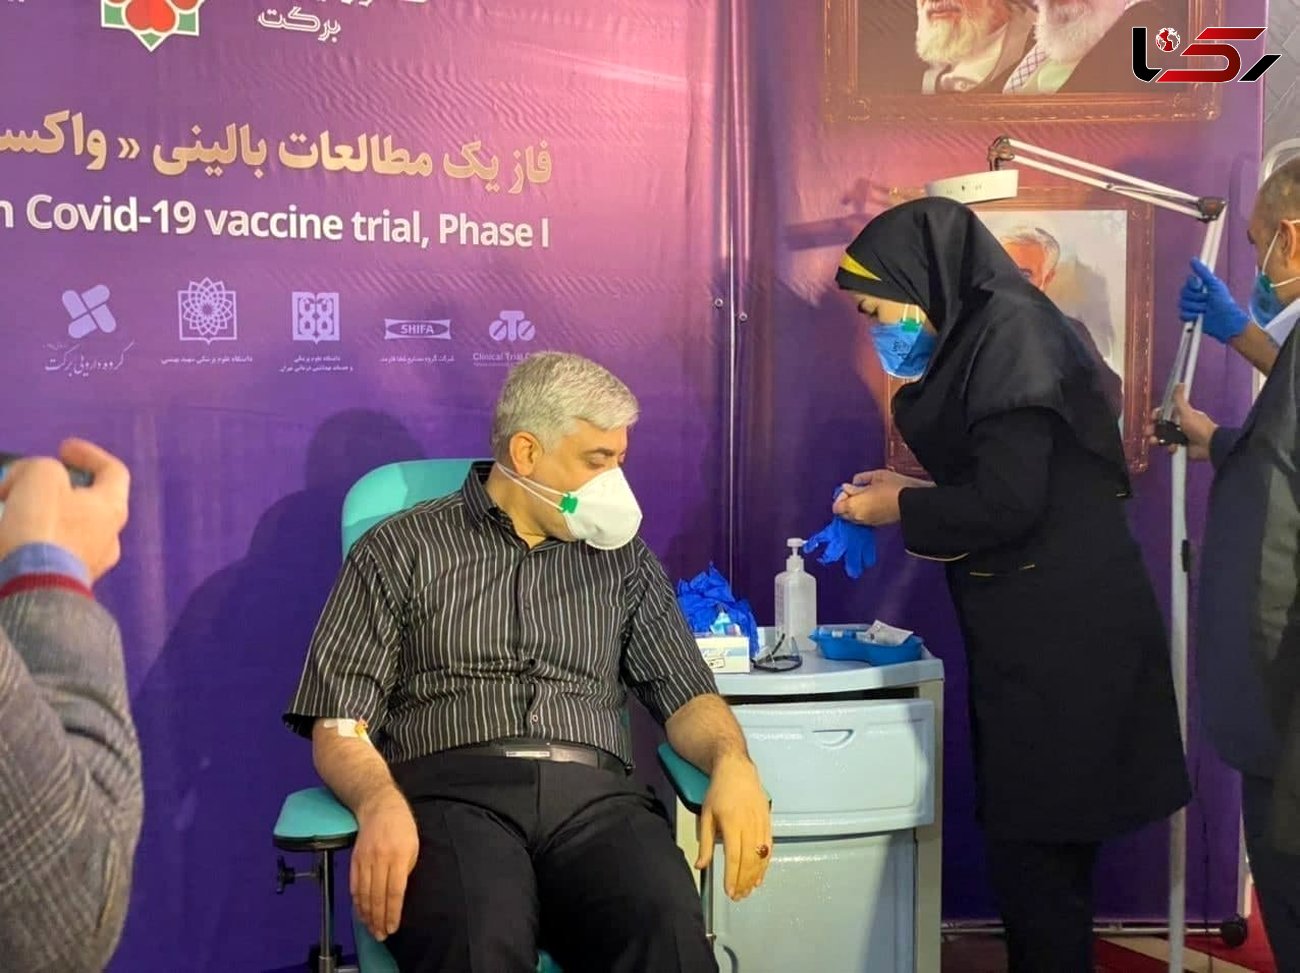 دومین نفری که واکسن کرونا ایرانی را دریافت کرد چه کسی بود ؟ + عکس